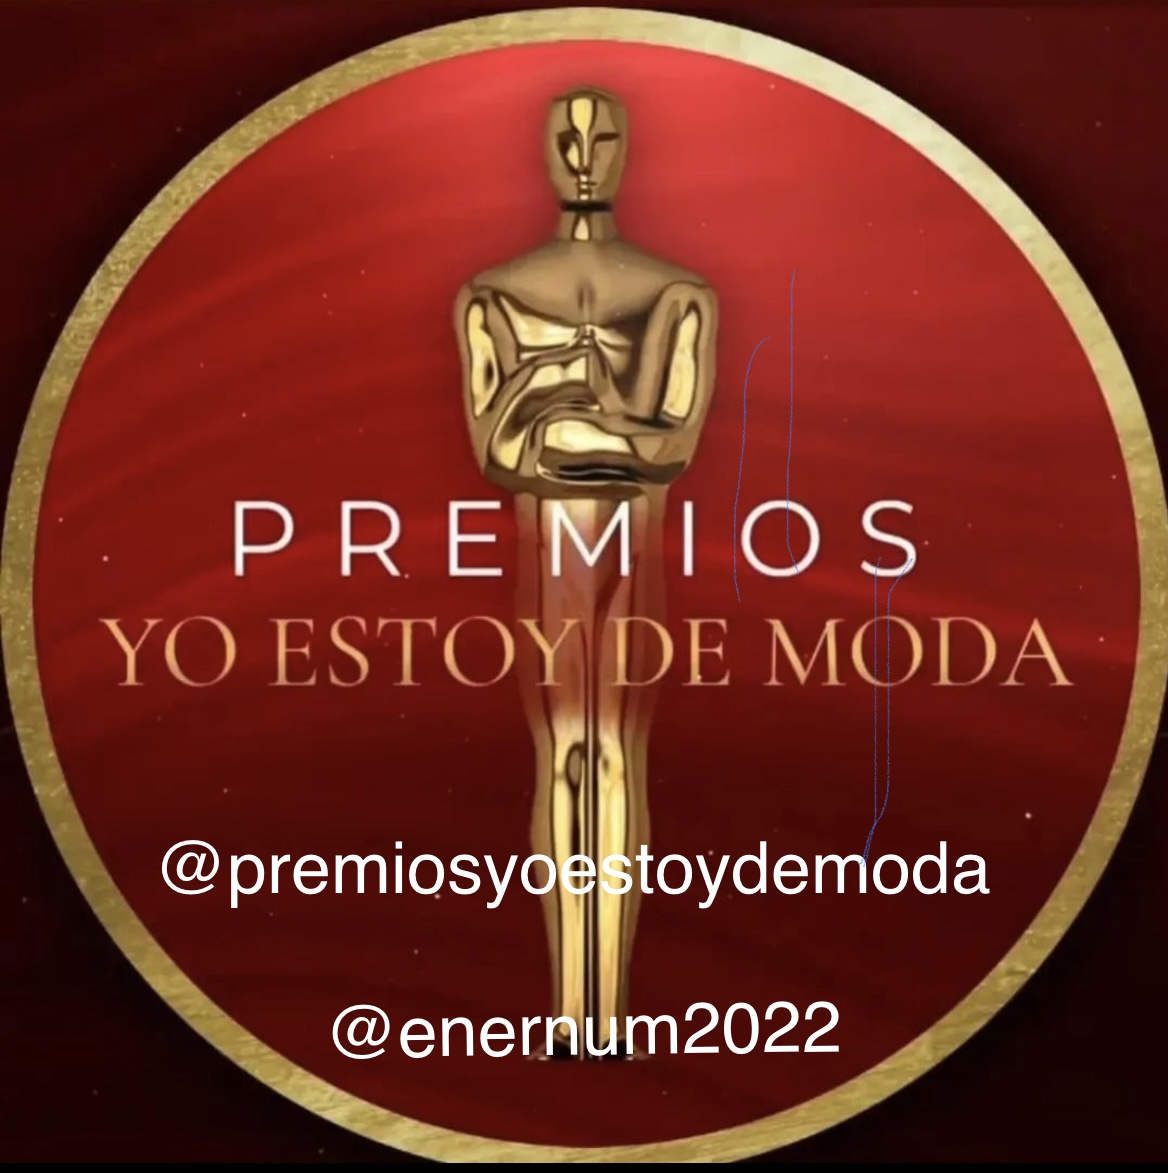 PREMIOS YO ESTOY DE MODA 2022